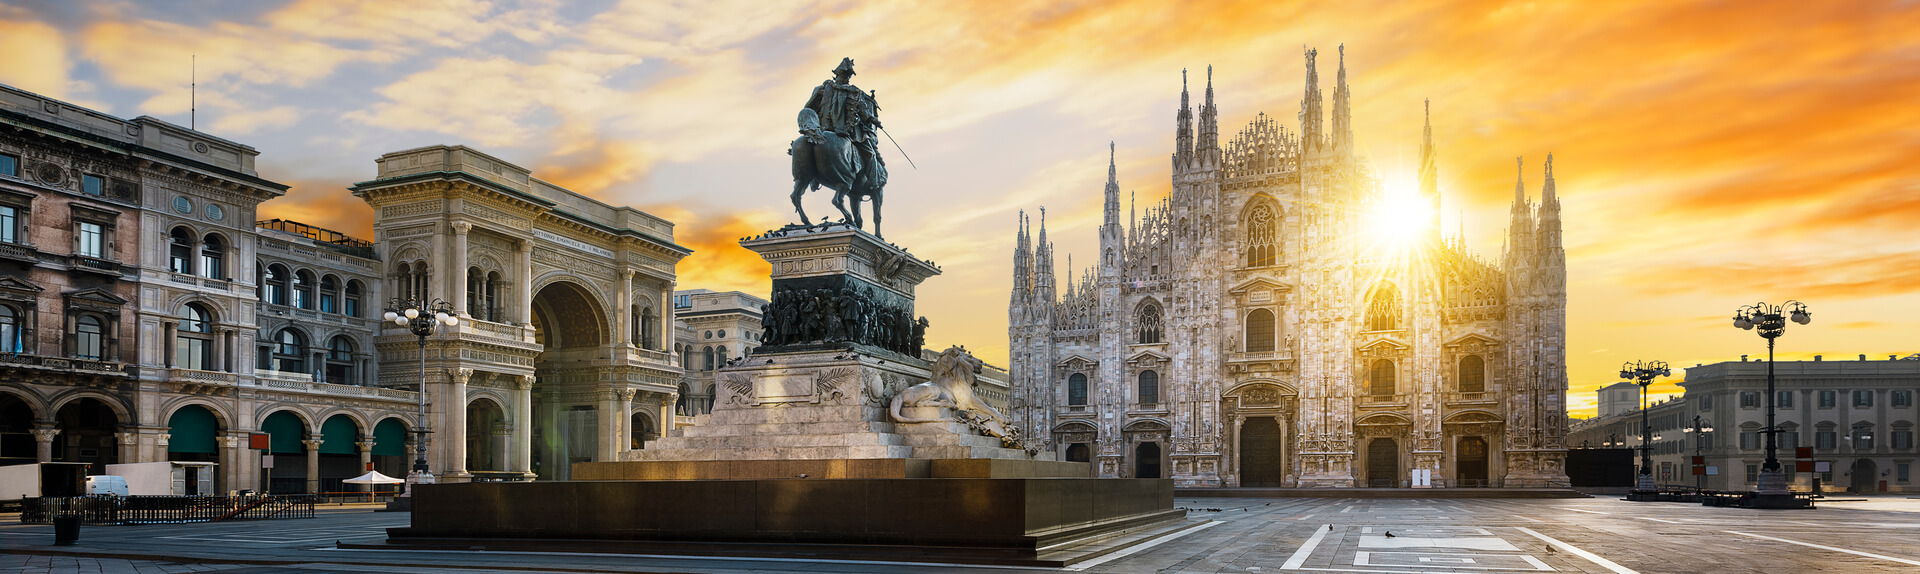 View of Piazza Duomo with la Statua di Vittorio Emanuele II and la Duomo di Milano in the background